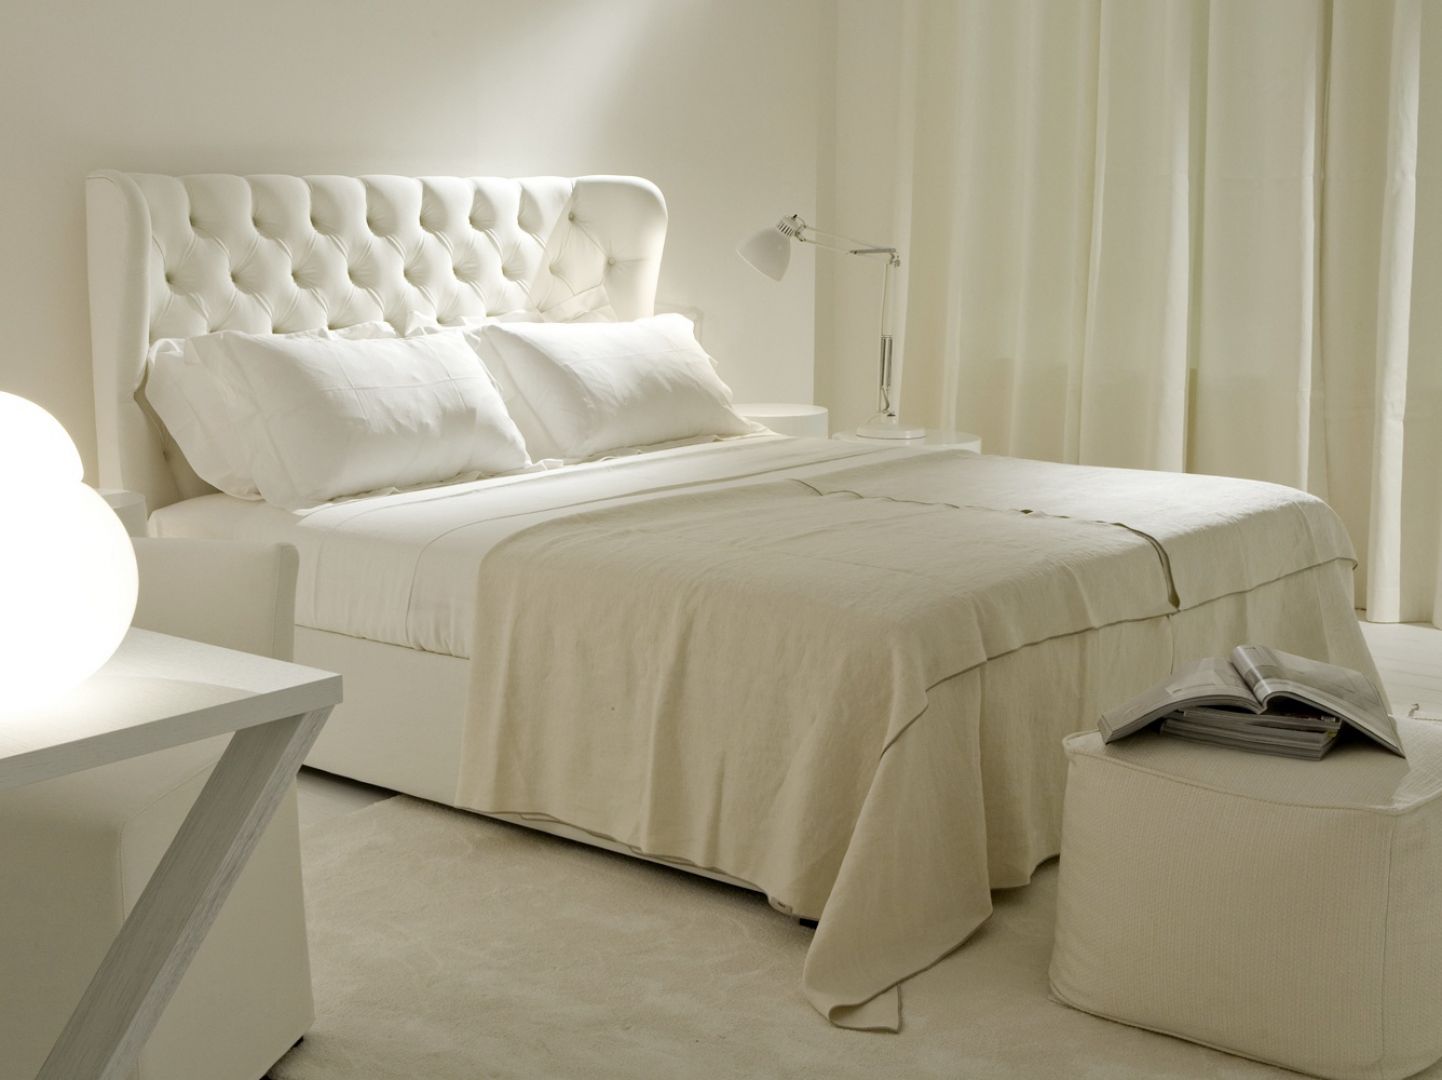 Białe łóżko to świeżość i delikatność w sypialni. Doskonałe są do aranżacji sypialni dla kobiet. Fot.Meridiani